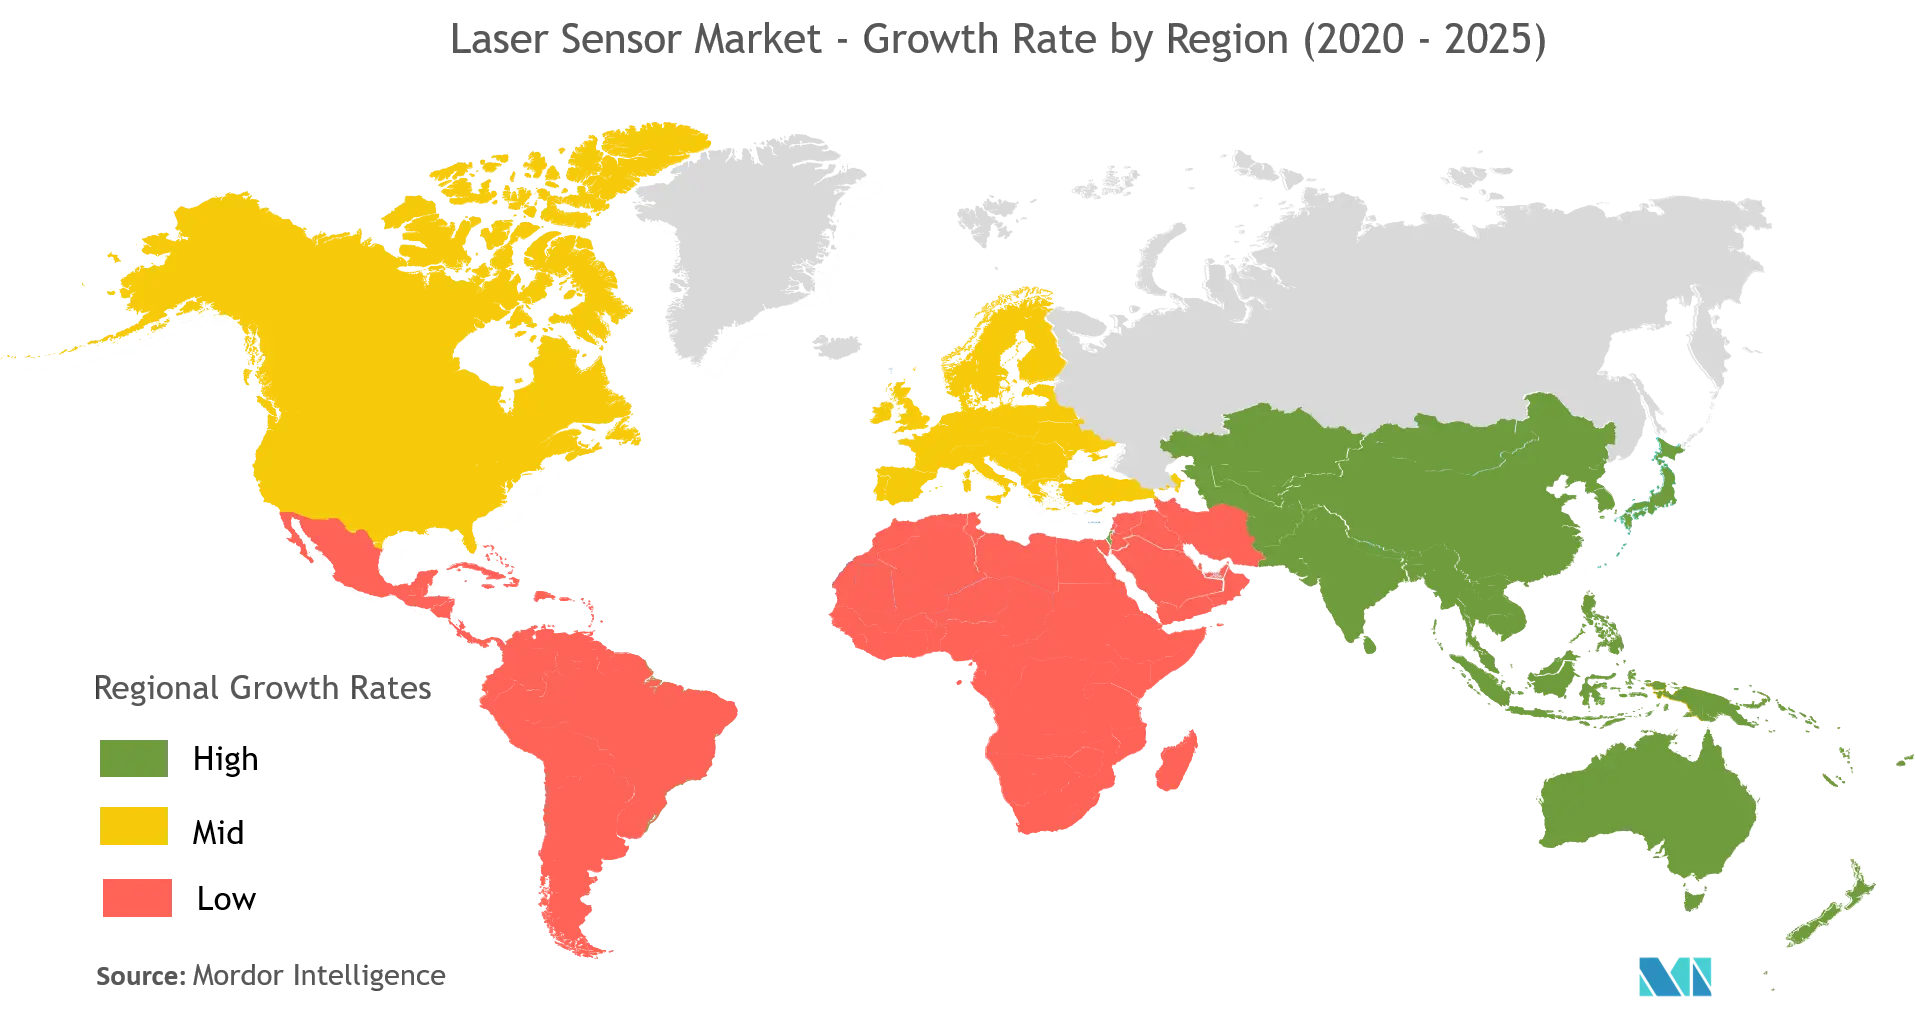 Mercado de sensores láser tasa de crecimiento por región (2020 - 2025)